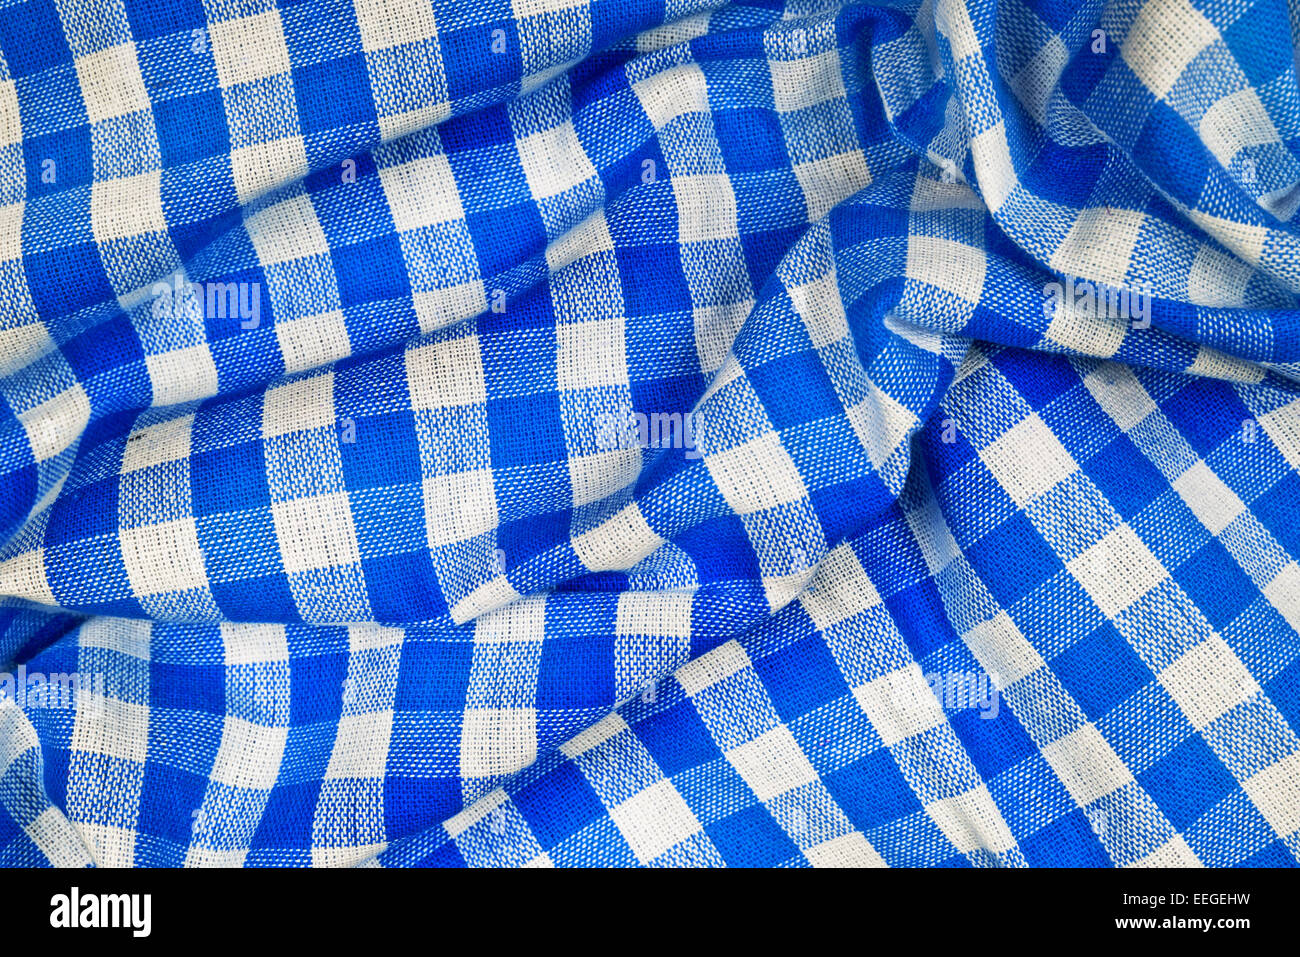 Blau und weiß faltig karierten Tischdecke bayerische Muster Textur als  Münchner Oktoberfest Hintergrund Stockfotografie - Alamy